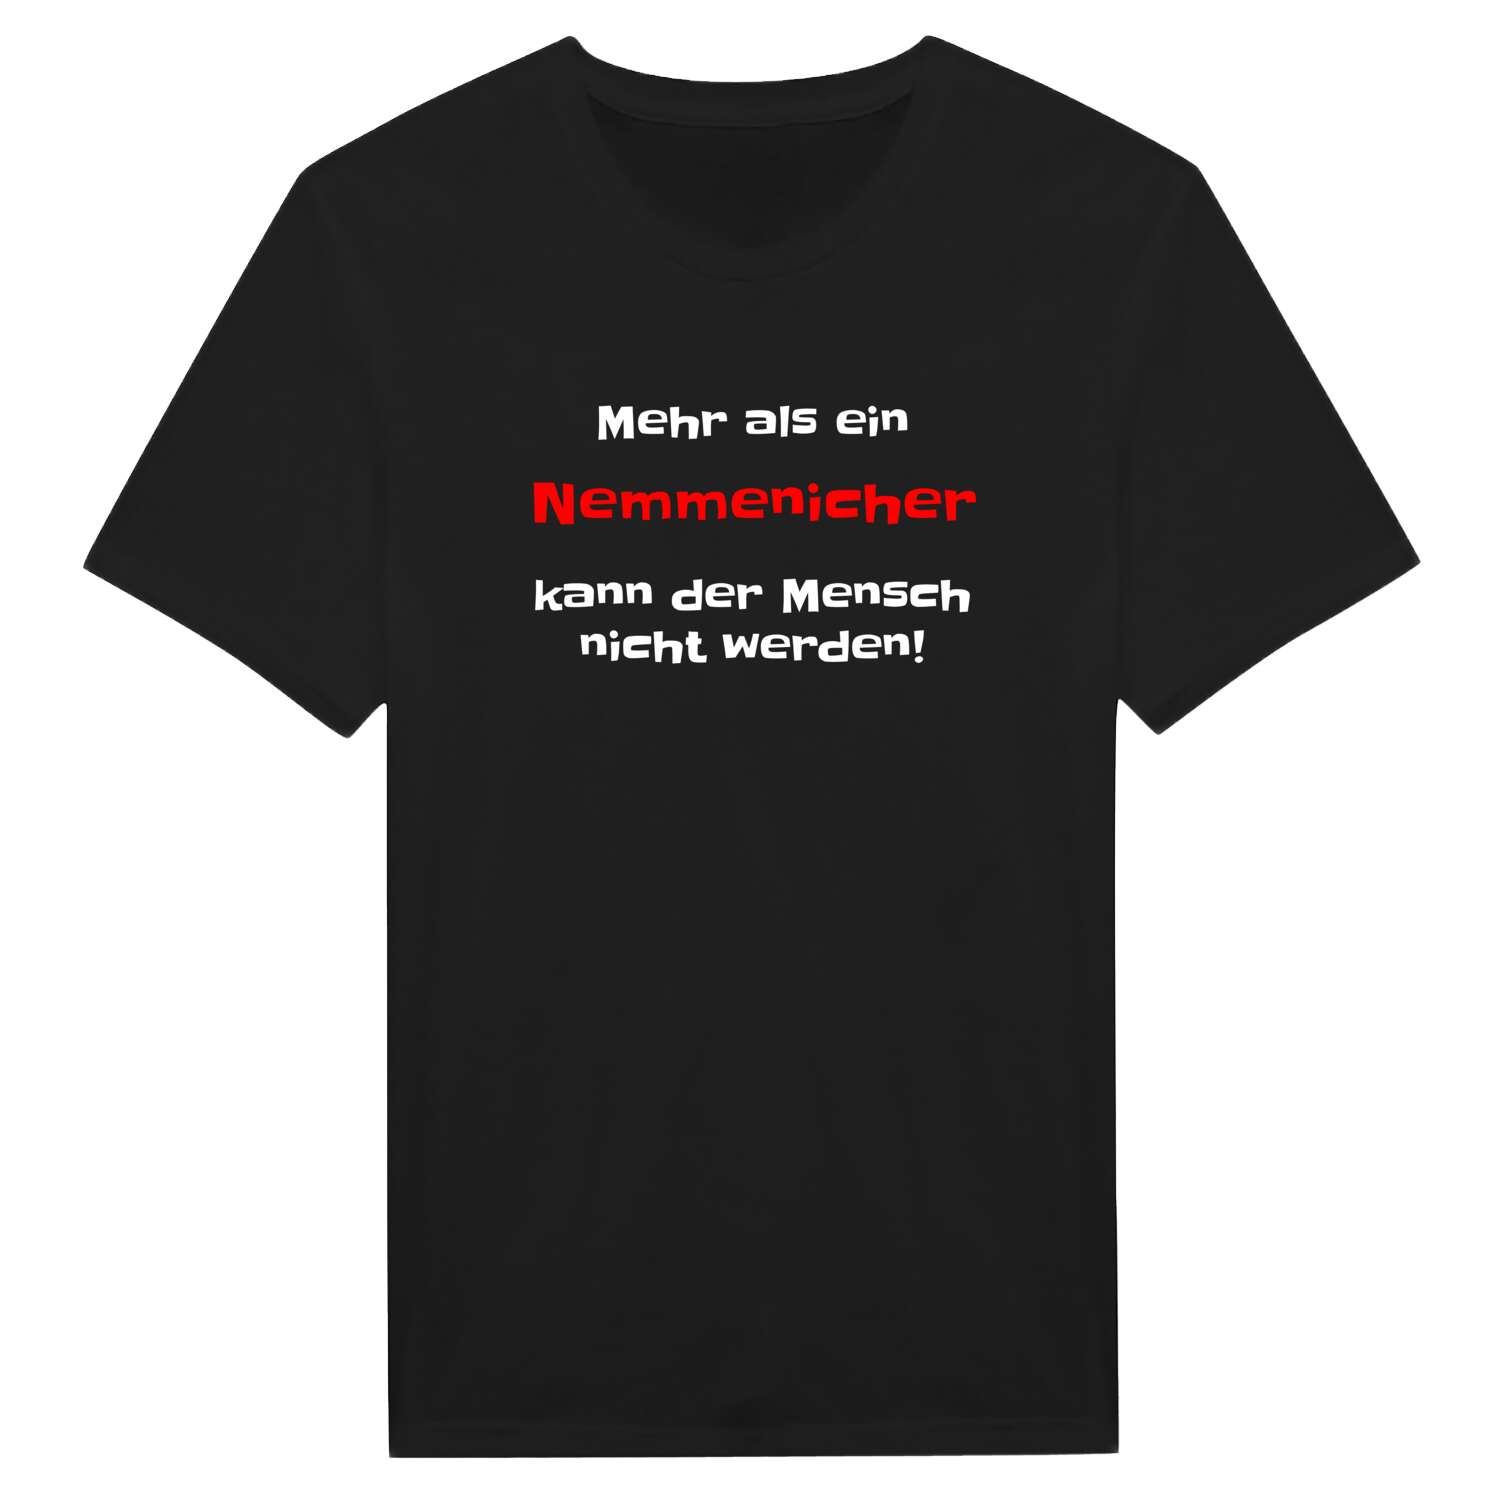 Nemmenich T-Shirt »Mehr als ein«